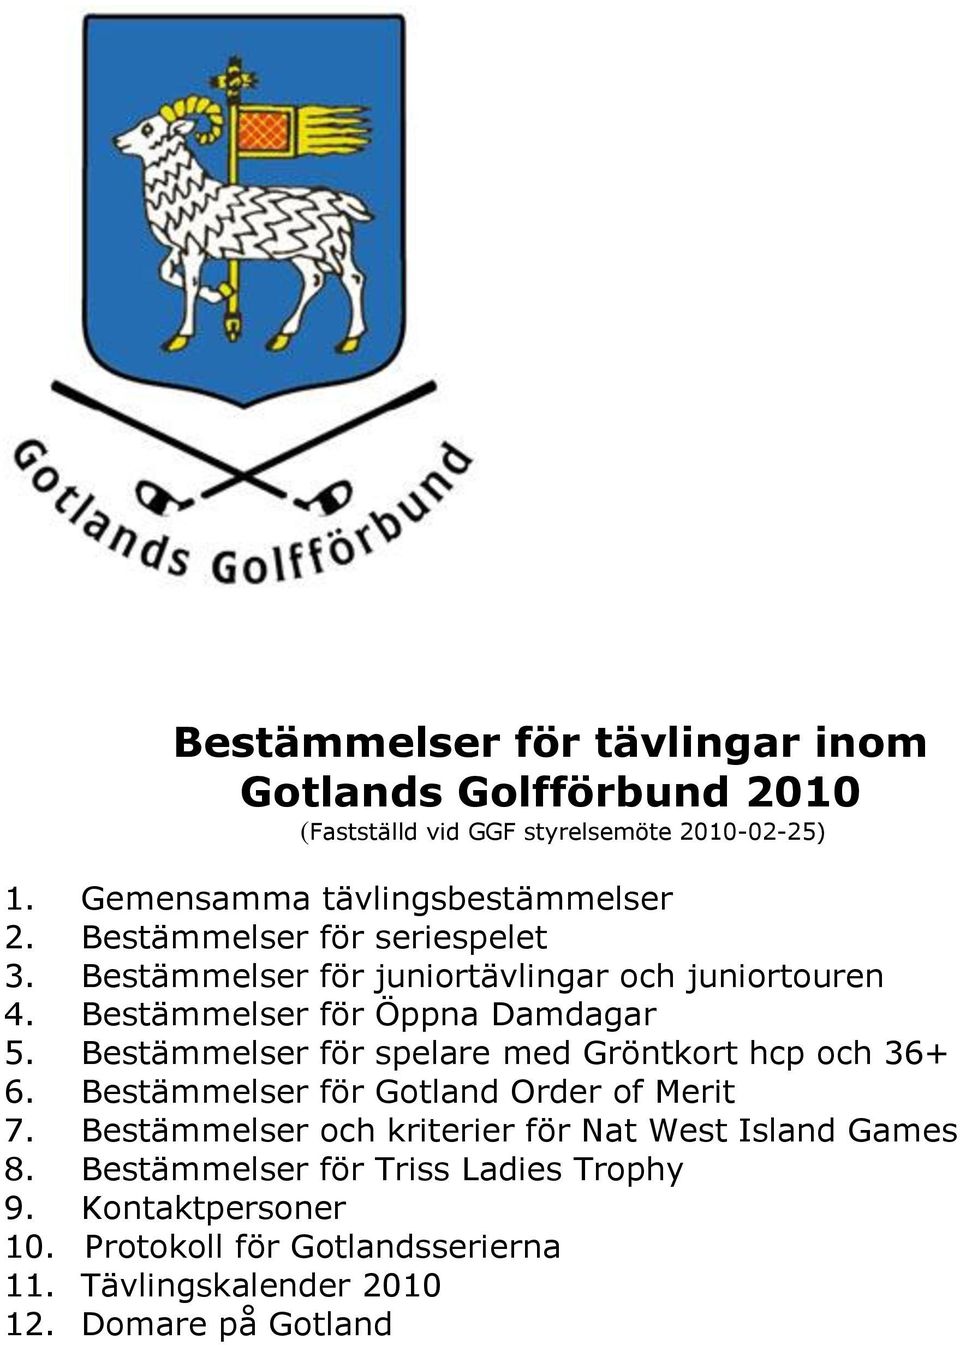 Bestämmelser för Öppna Damdagar 5. Bestämmelser för spelare med Gröntkort hcp och 36+ 6. Bestämmelser för Gotland Order of Merit 7.